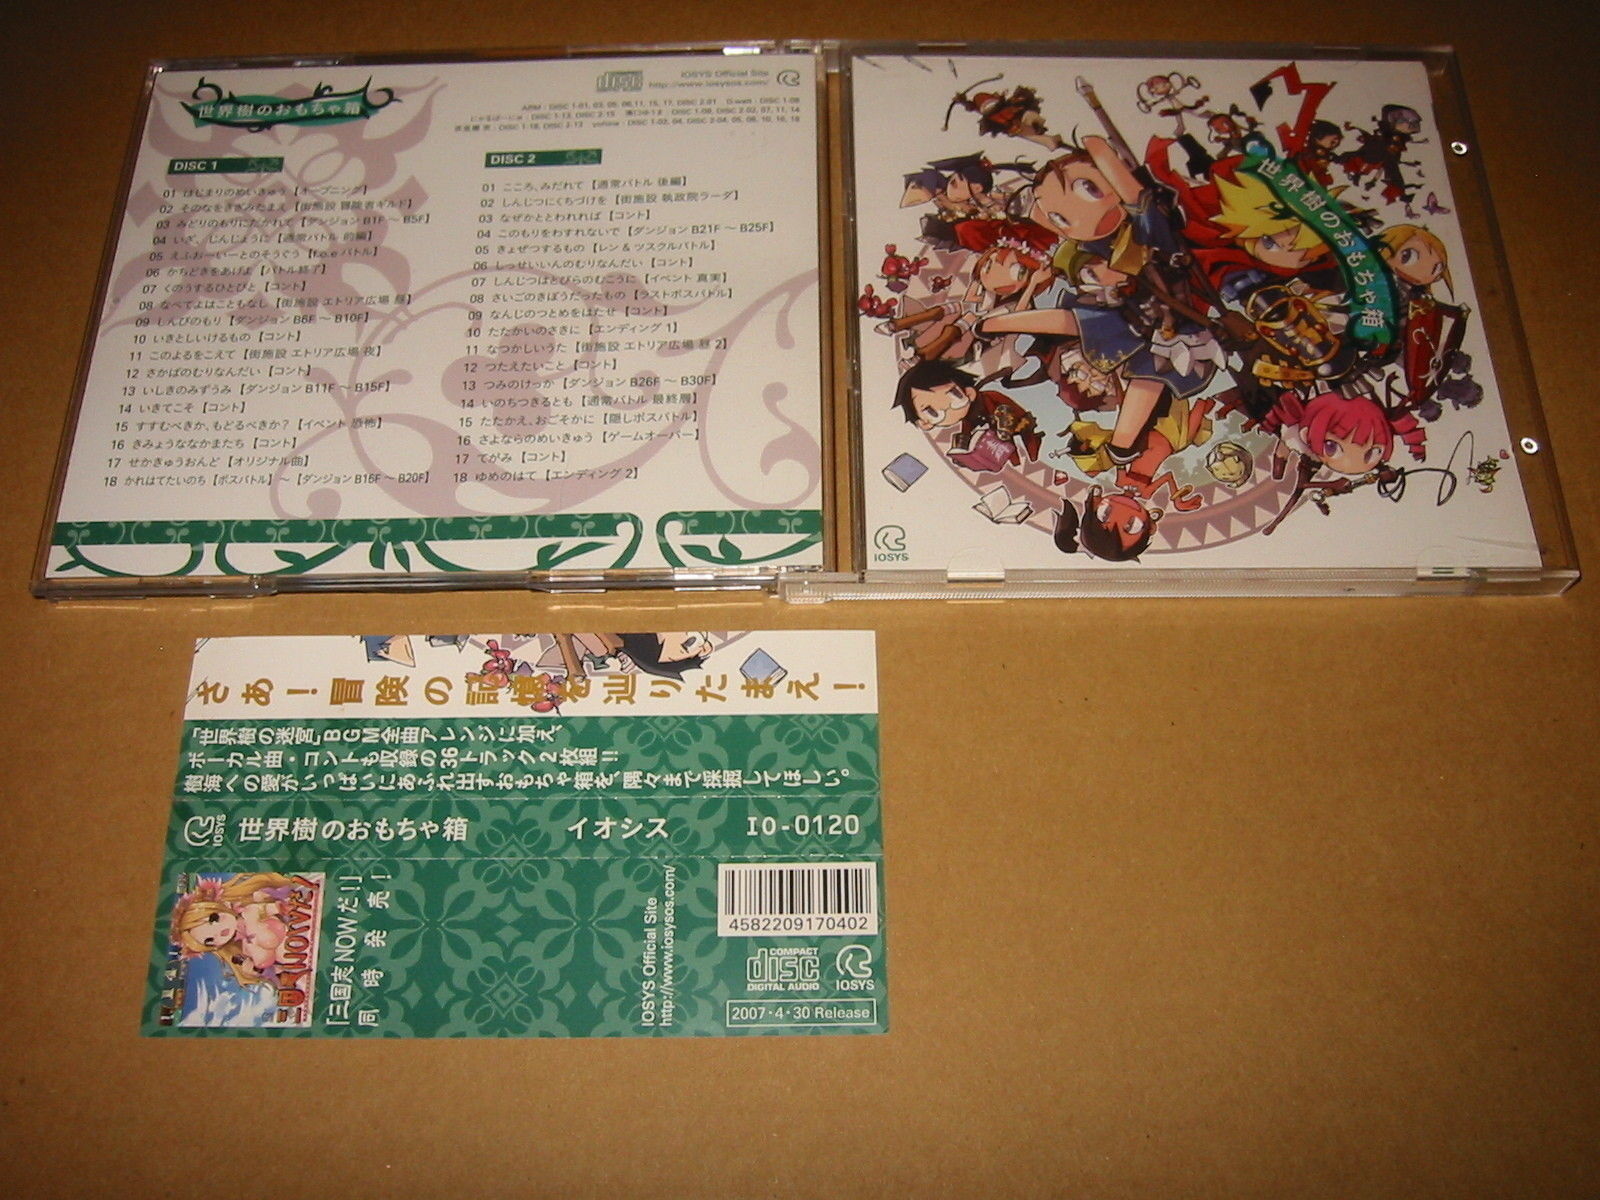 Sekaiju no Omochabako [Etrian Odyssey] Iosys Doujin Arrange Soundtrack,CD  eBay